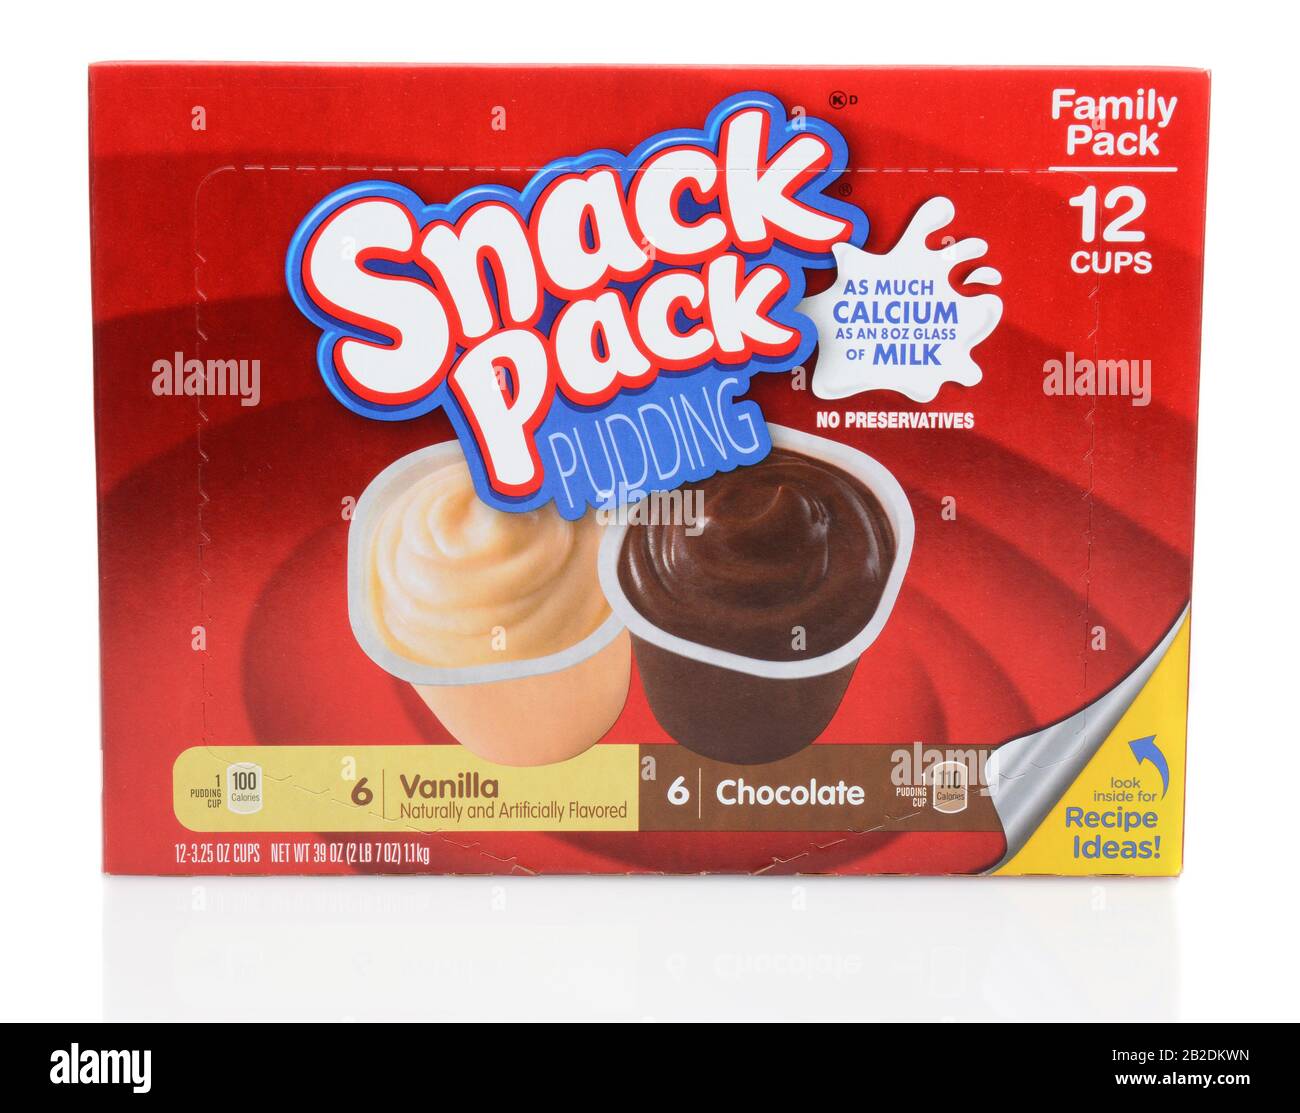 Irvine, CA - 12 SEPTEMBRE 2014 : une boîte de pudding de snack Pack. Le snack Pack a été introduit en 1968 comme pouding stable dans des récipients à usage unique. Banque D'Images